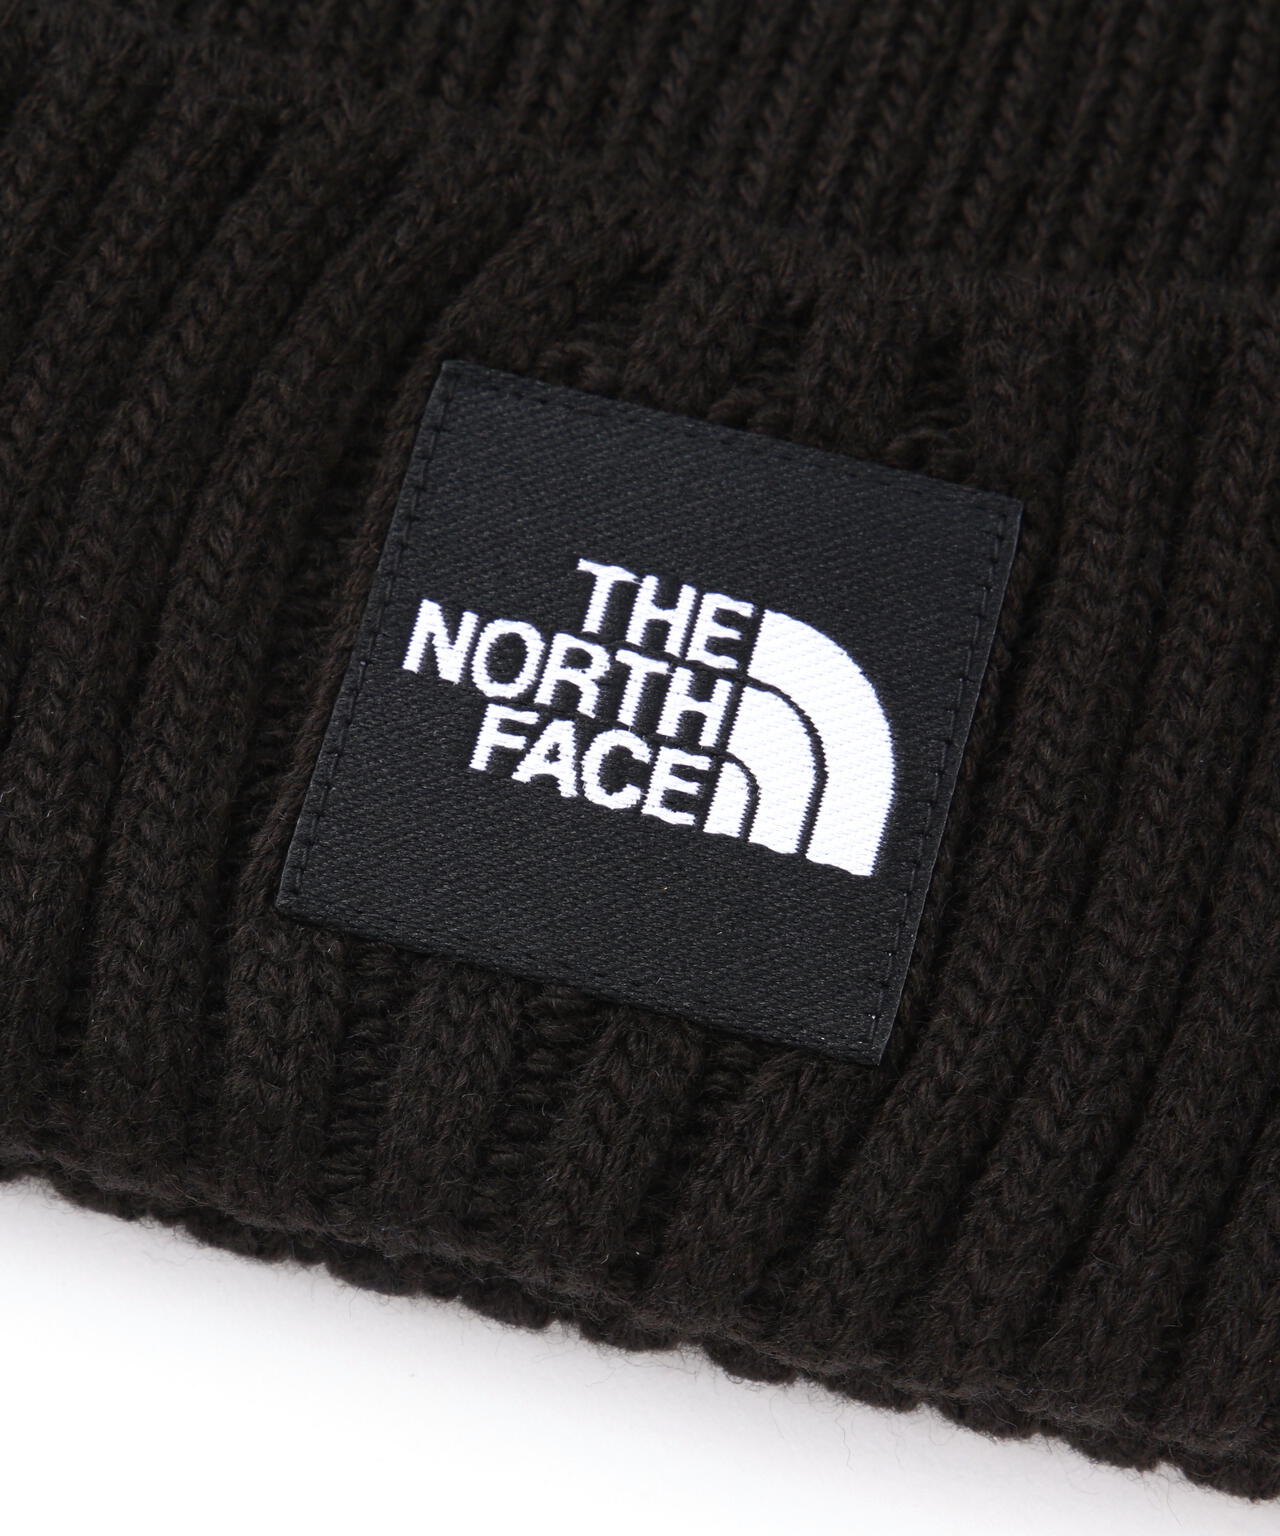 THE NORTH FACE/ザ・ノースフェイス/Cappucho Lid/カプッチョリッド ニット帽